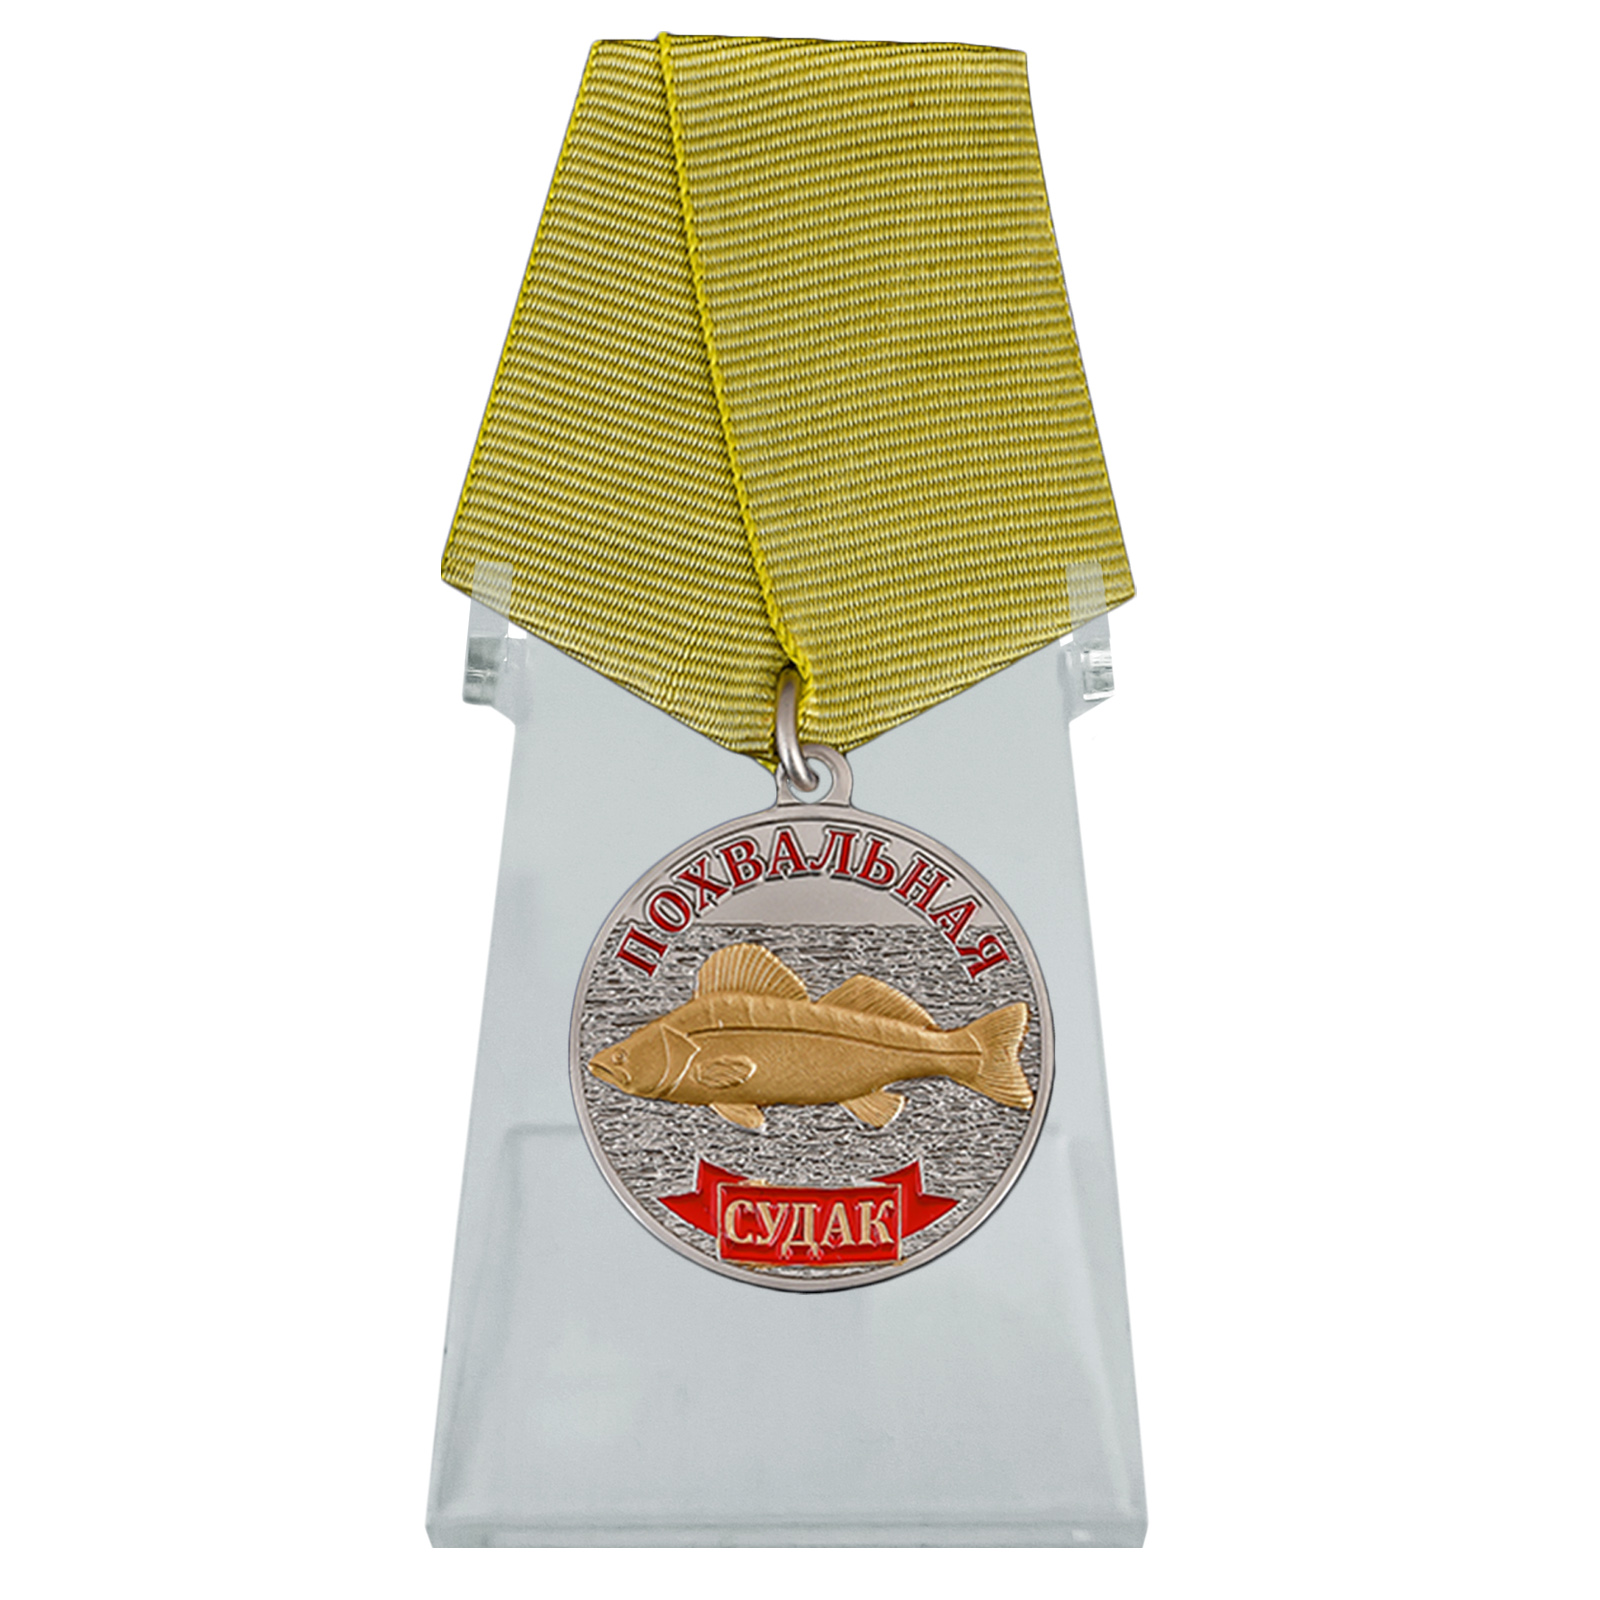 Купить медаль рыбакам Судак на подставке онлайн в подарок